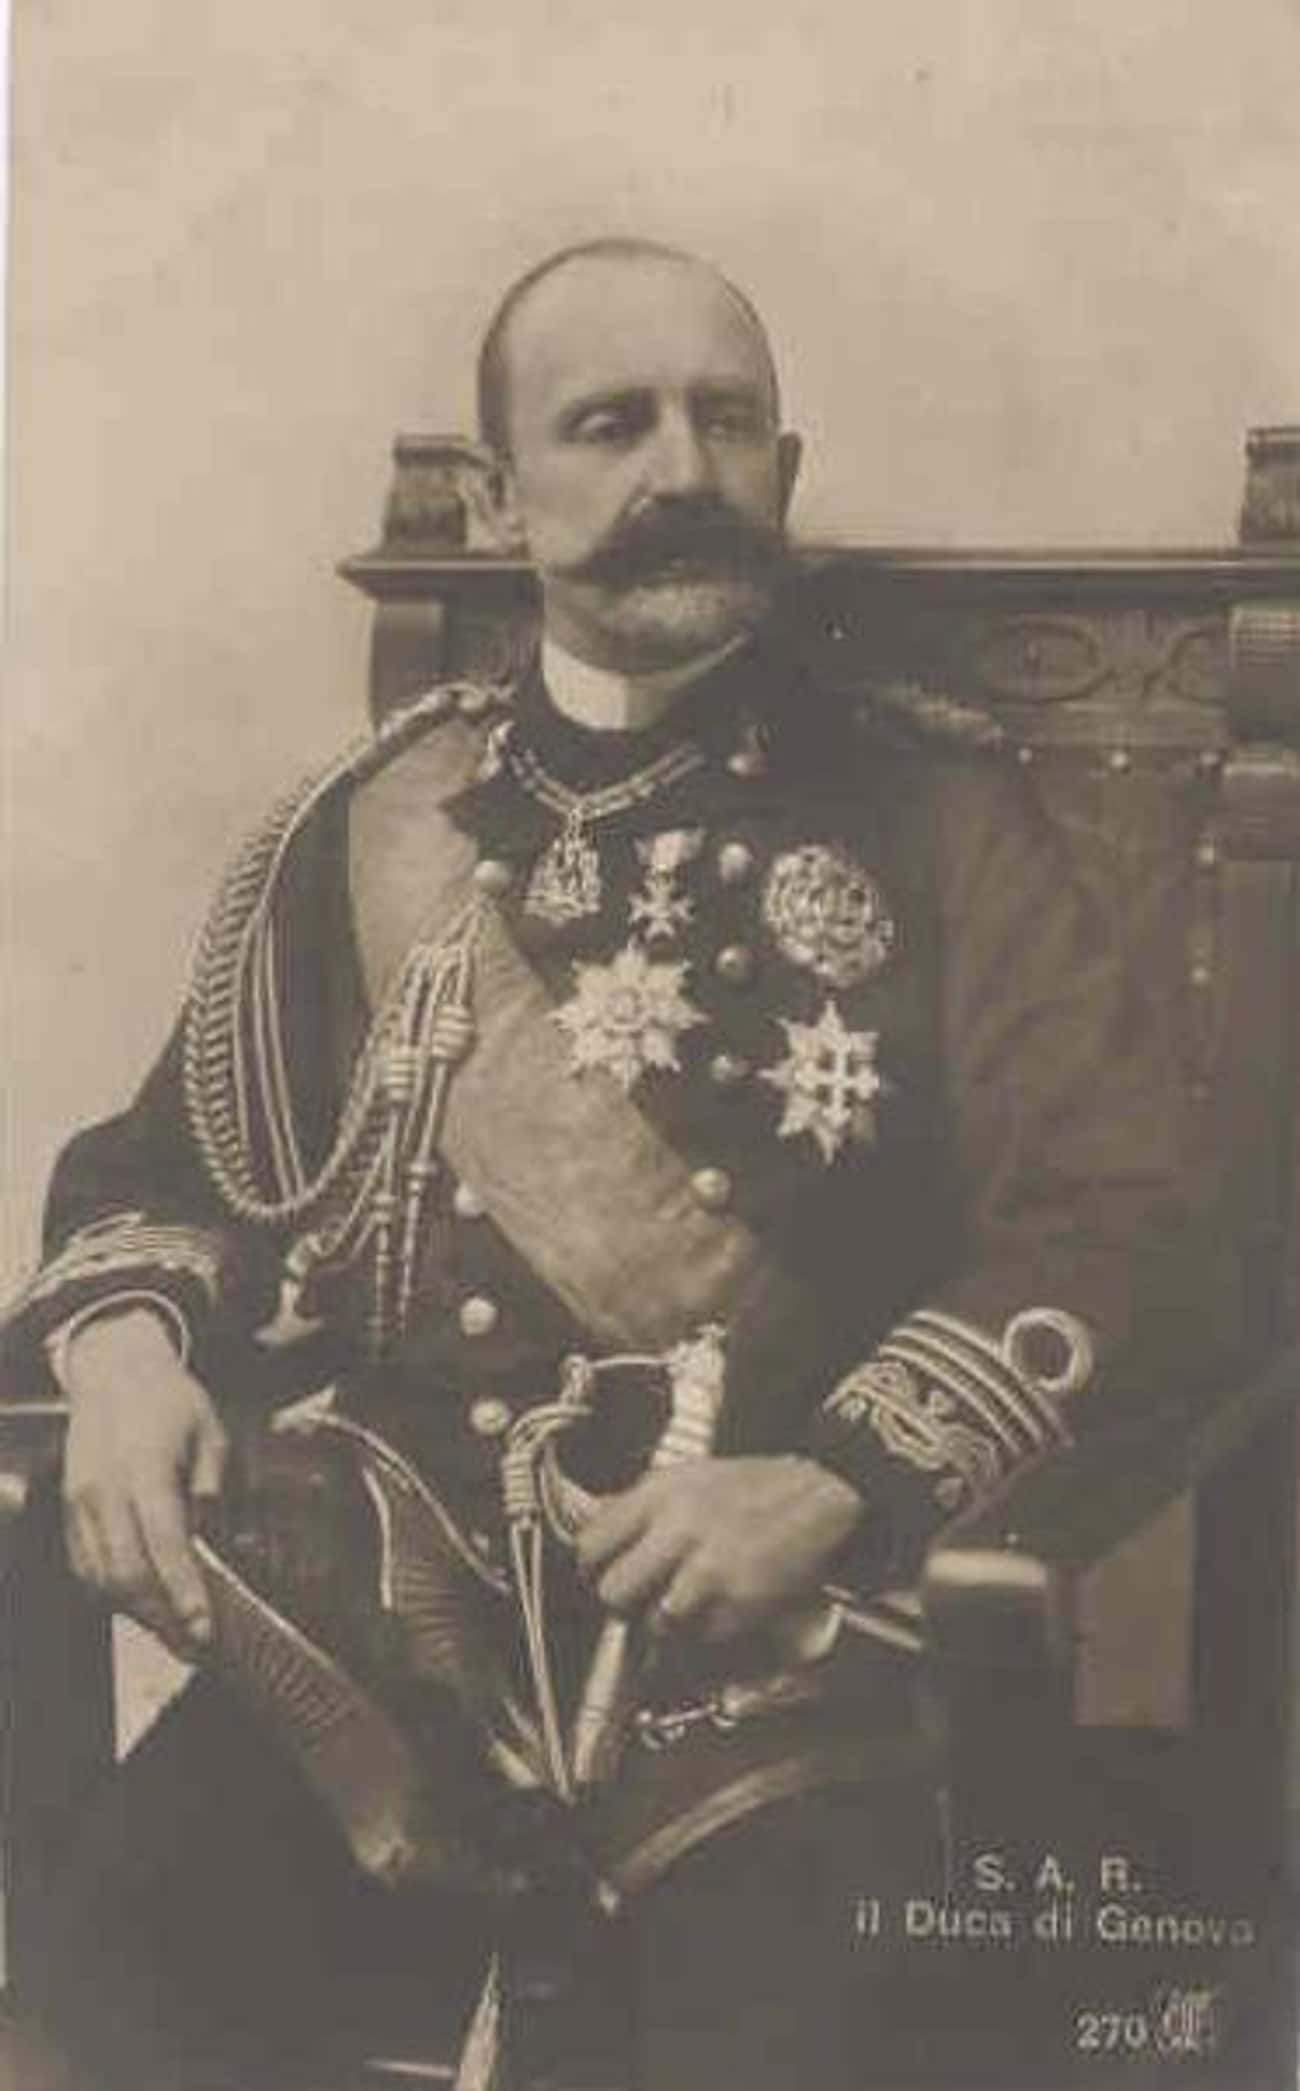 Prince Thomas, Duke of Genoa